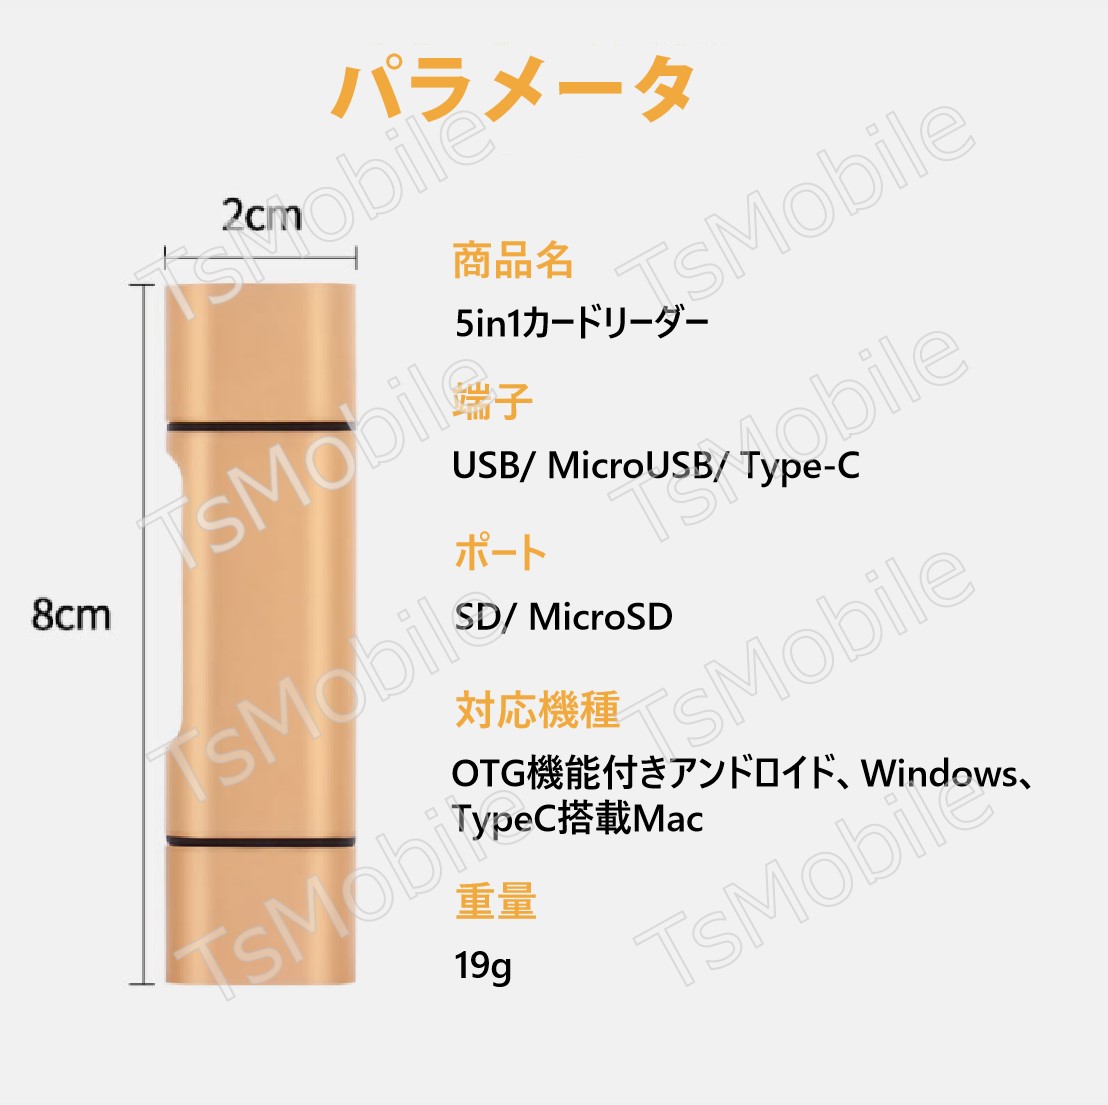 5in1 TypeC USB MicroUSB SD TFカードリーダー OTG変換コネクタ Macbook メモリカードデータ移行 バックアップ スマホ 保存移動Android タブレット307382